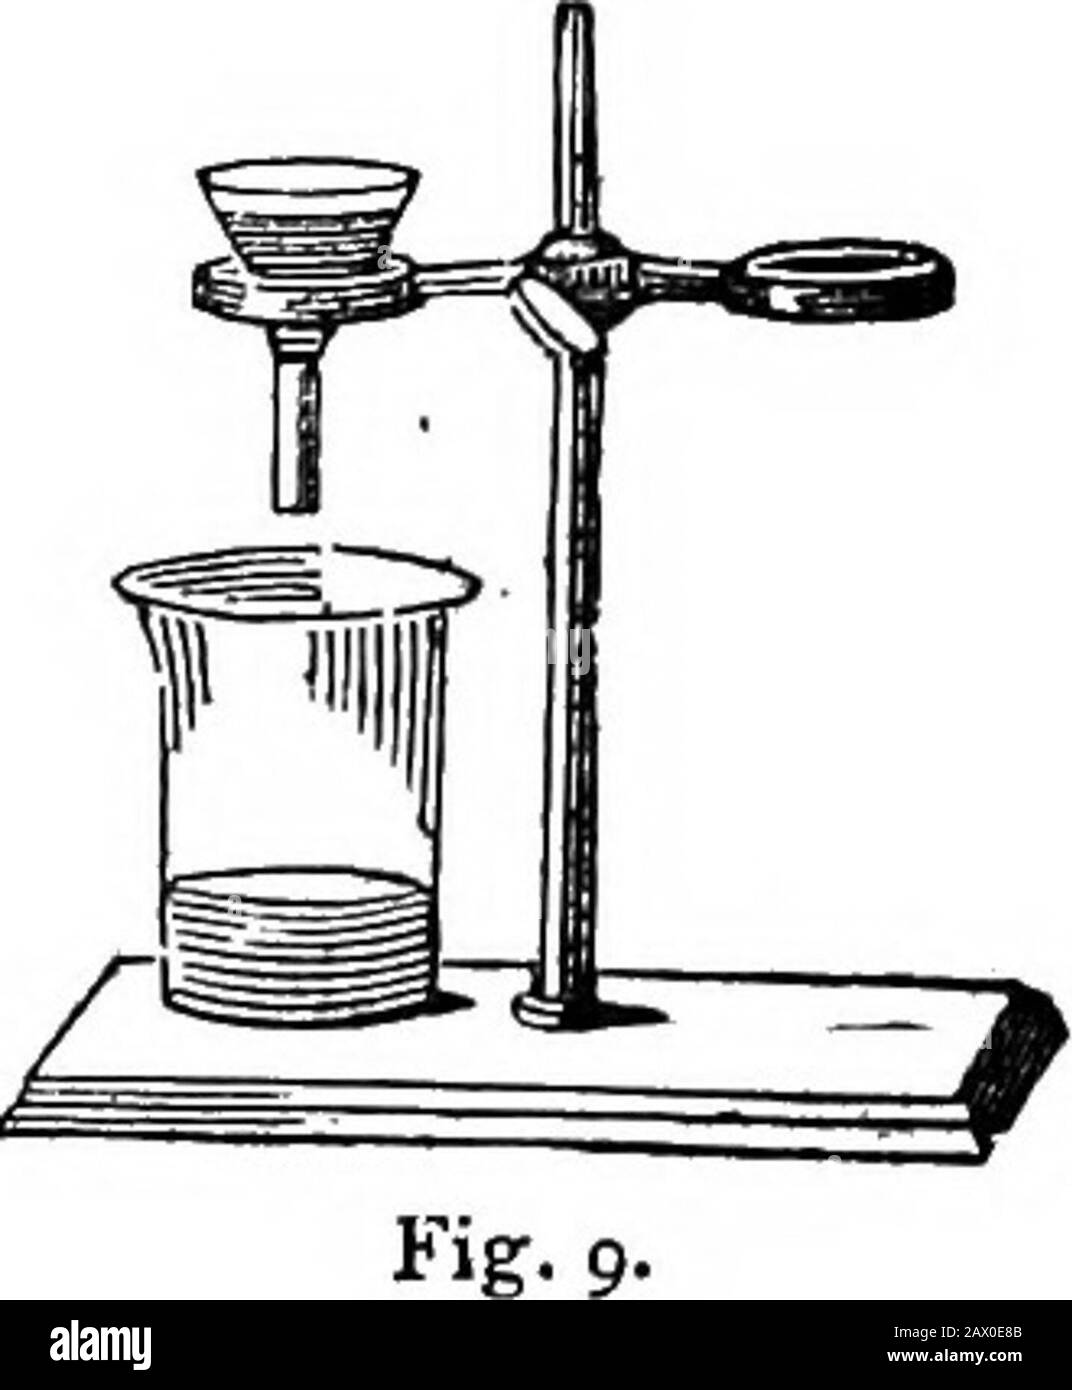 Un manual corto de química analítica, cualitativa y  cuantitativa,--inorgánica y orgánica . Fig. 8.. las ilustraciones muestran,  fig. 8 (a), el círculo de papel, y (b) el mismo que foldedfor use, mientras